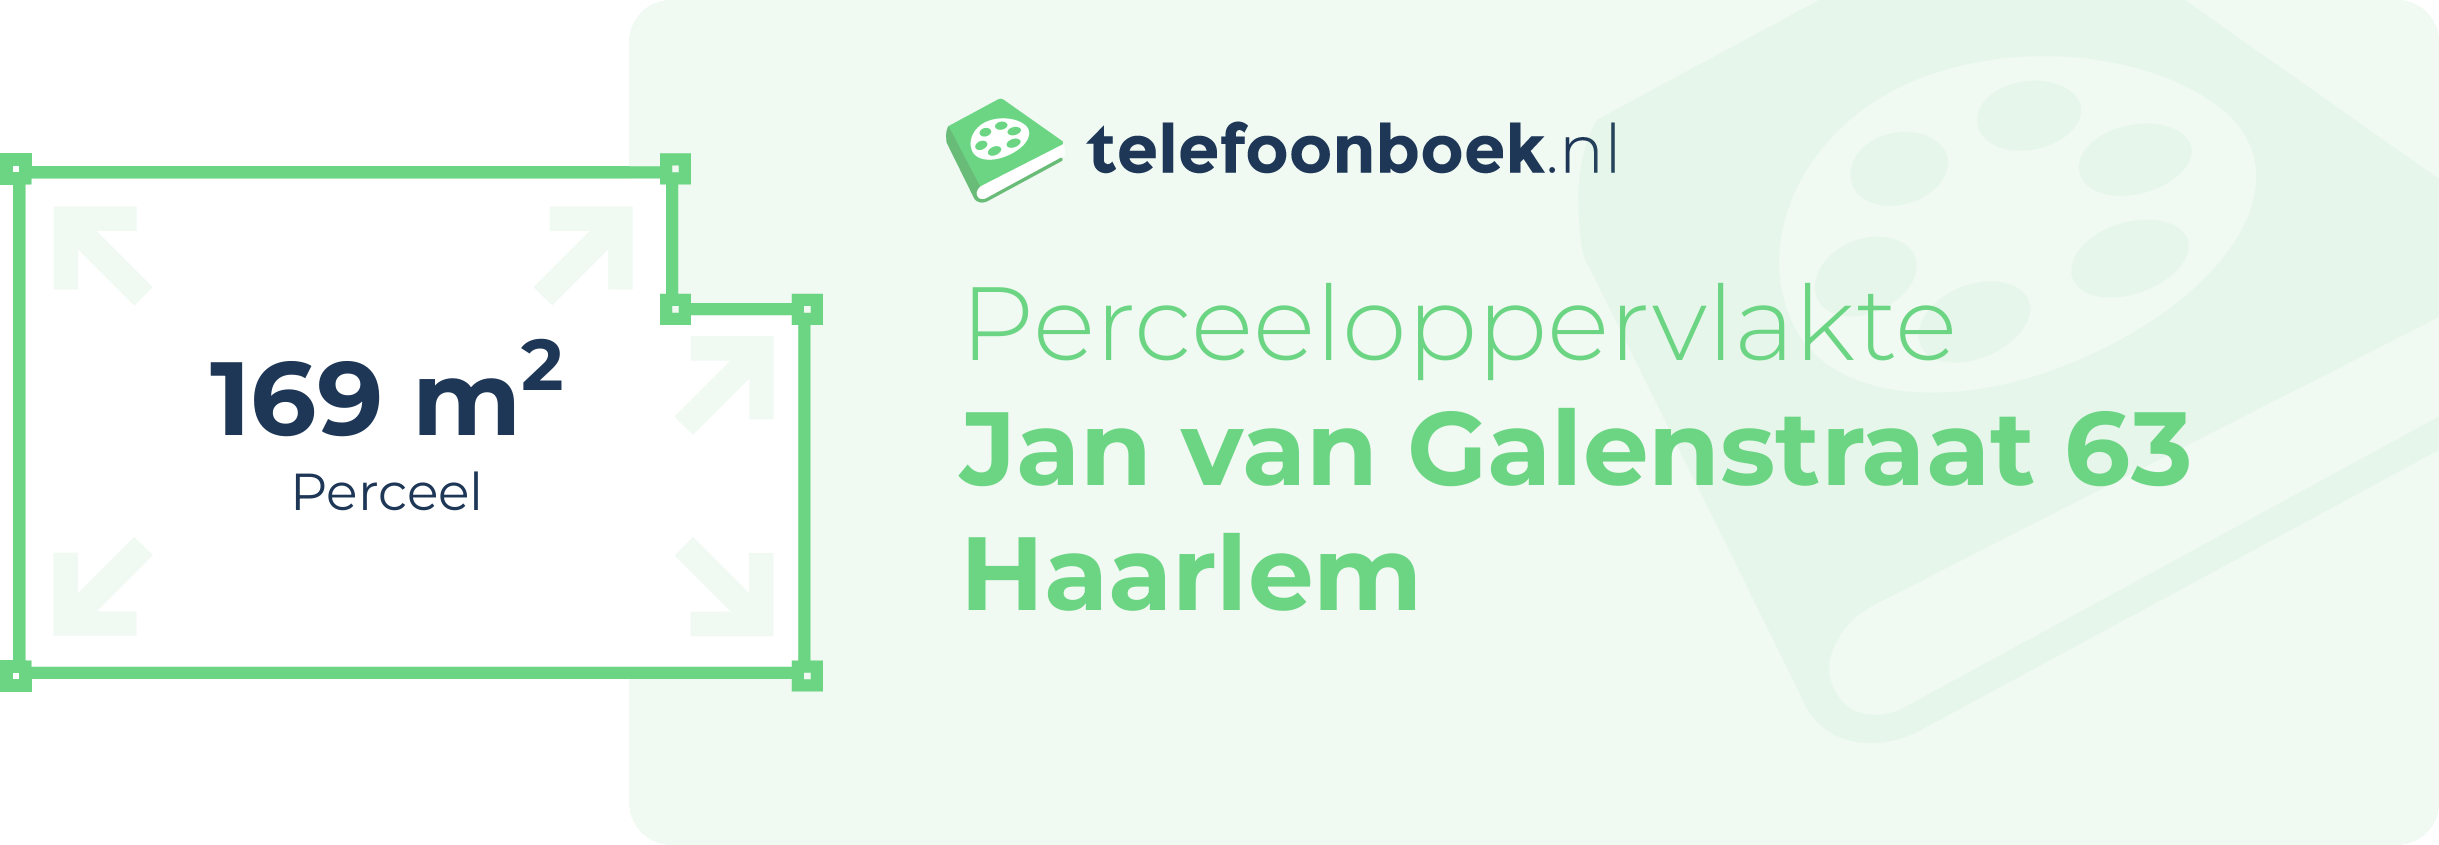 Perceeloppervlakte Jan Van Galenstraat 63 Haarlem